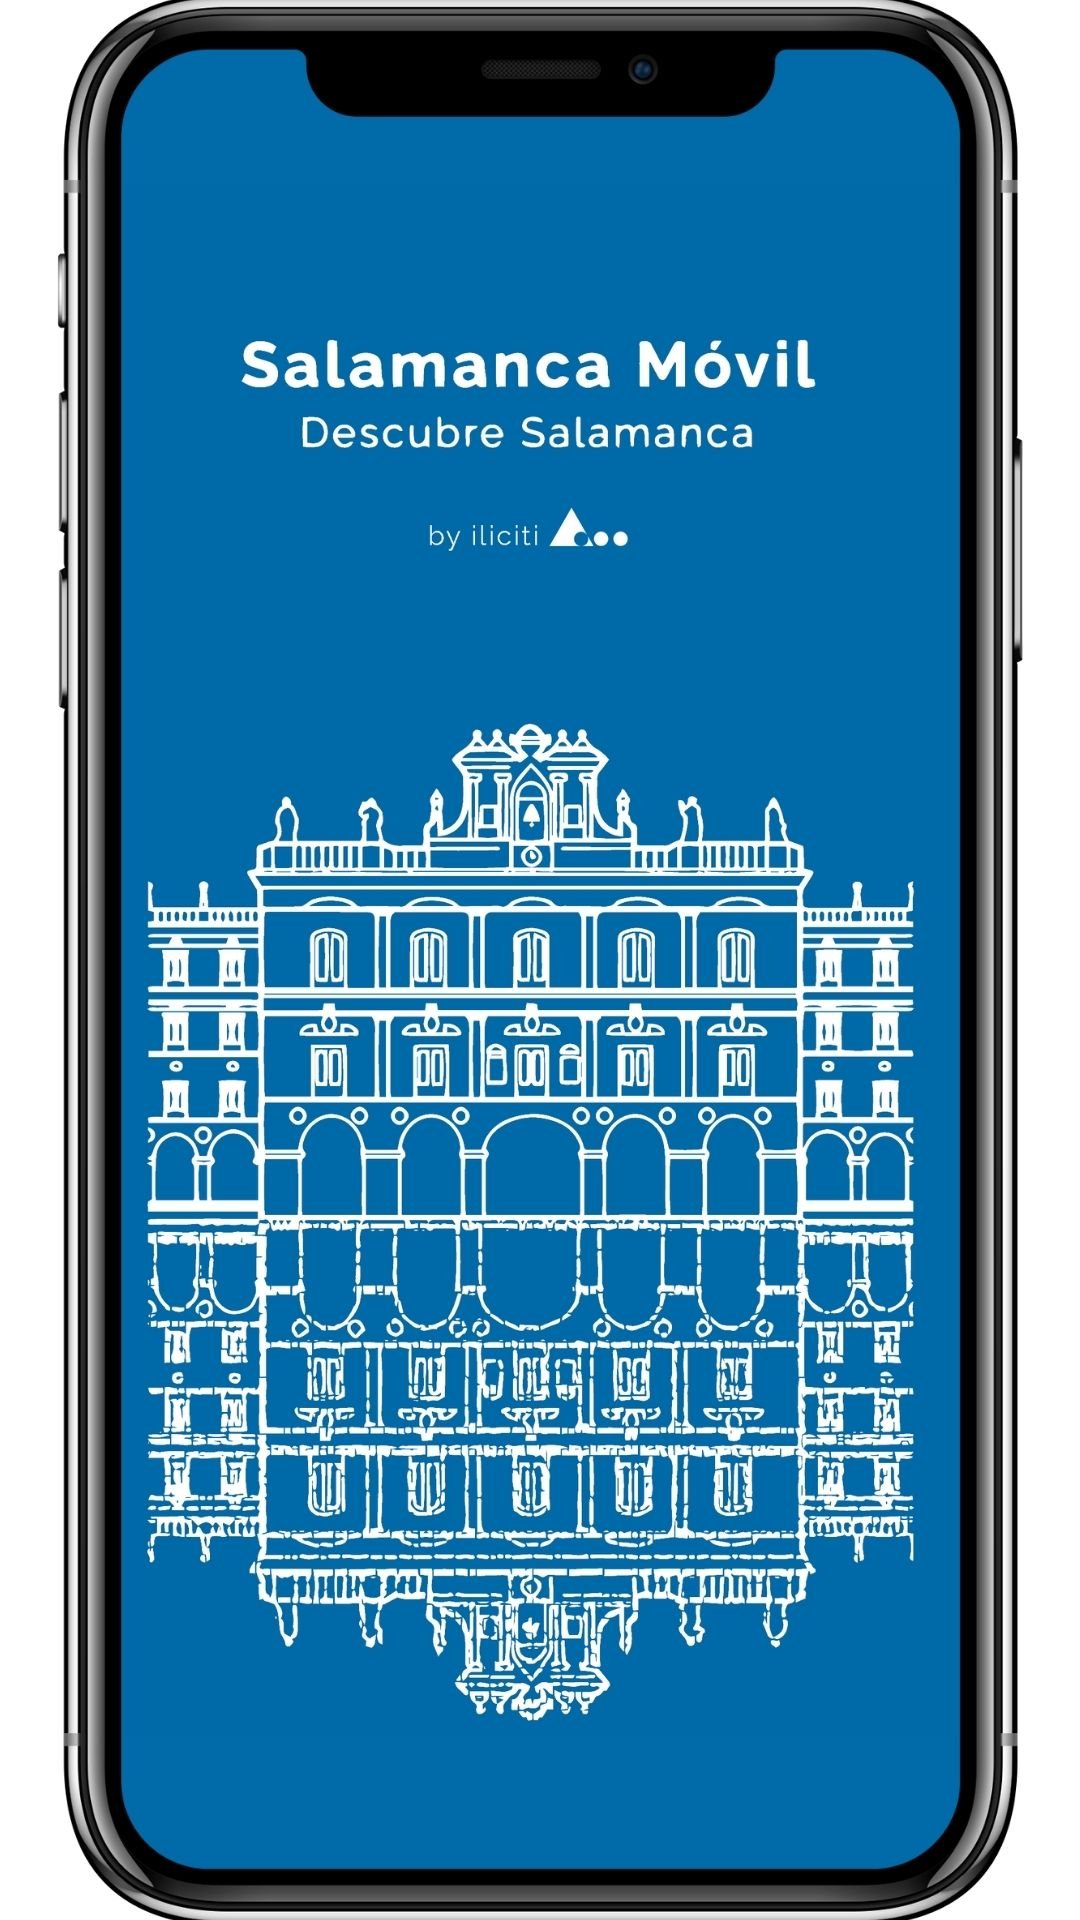 App Salamanca Móvil